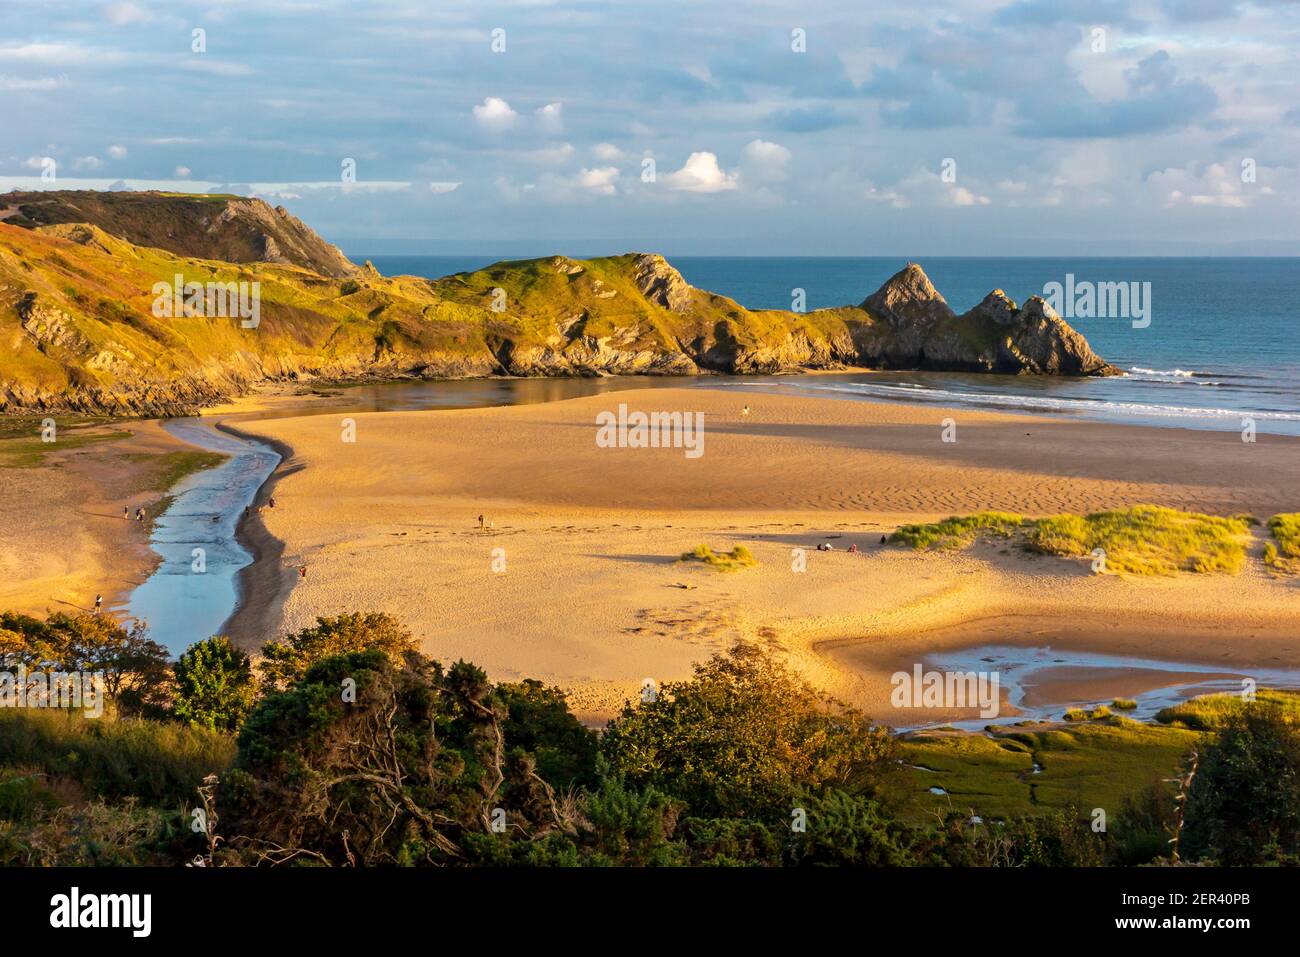 Vista de la playa de arena en Three Cliffs Bay on La costa sur de la península de Gower cerca de Swansea in Gales del Sur Reino Unido Foto de stock